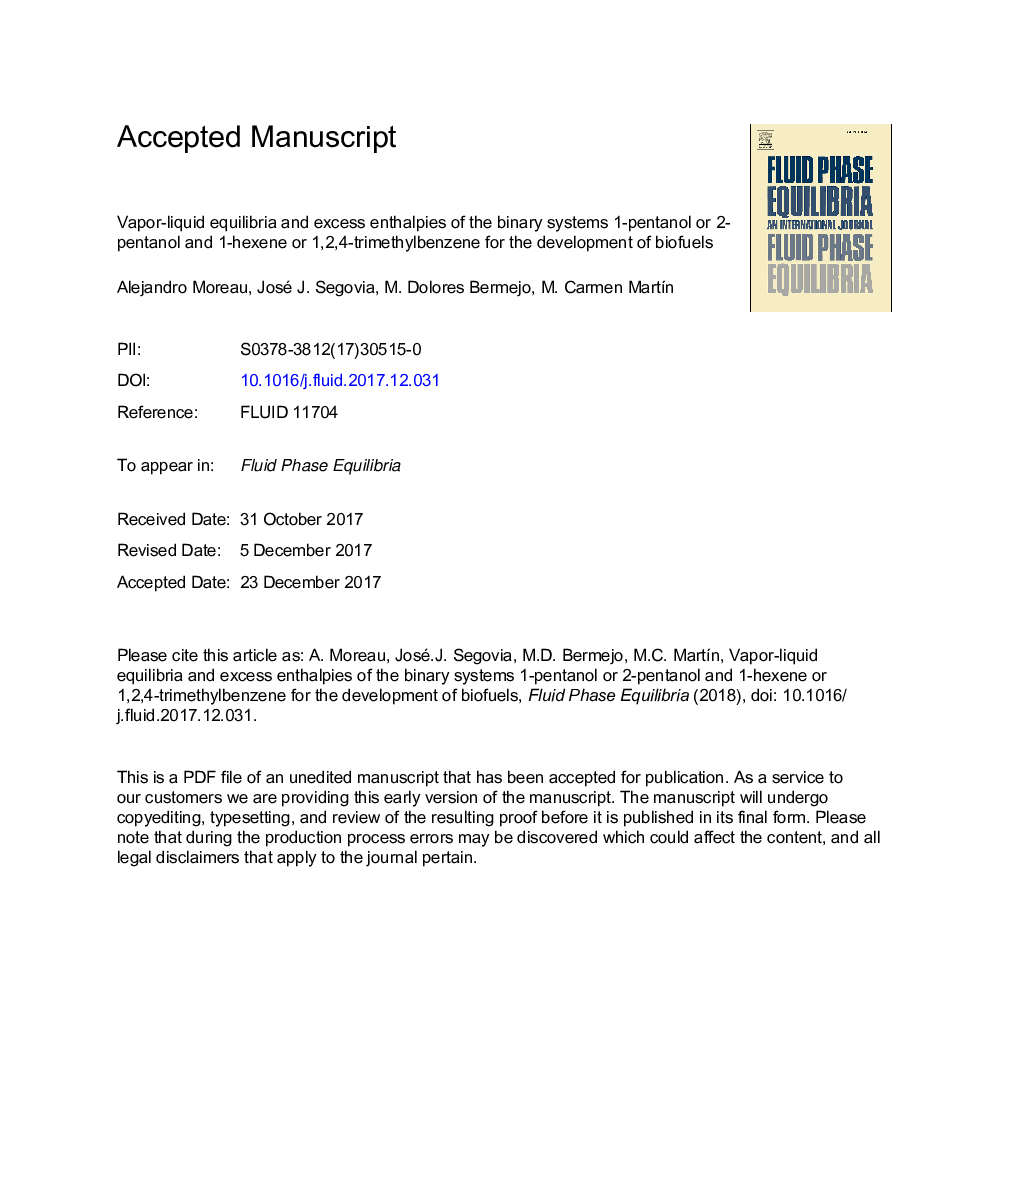 تعادل بخار و مایع و آنتالپی های اضافی سیستم های دودویی 1-پنتانول یا 2-پنتانول و 1-هگزن یا 1،2،4-ترتیبی بنزن برای توسعه سوخت های زیستی 